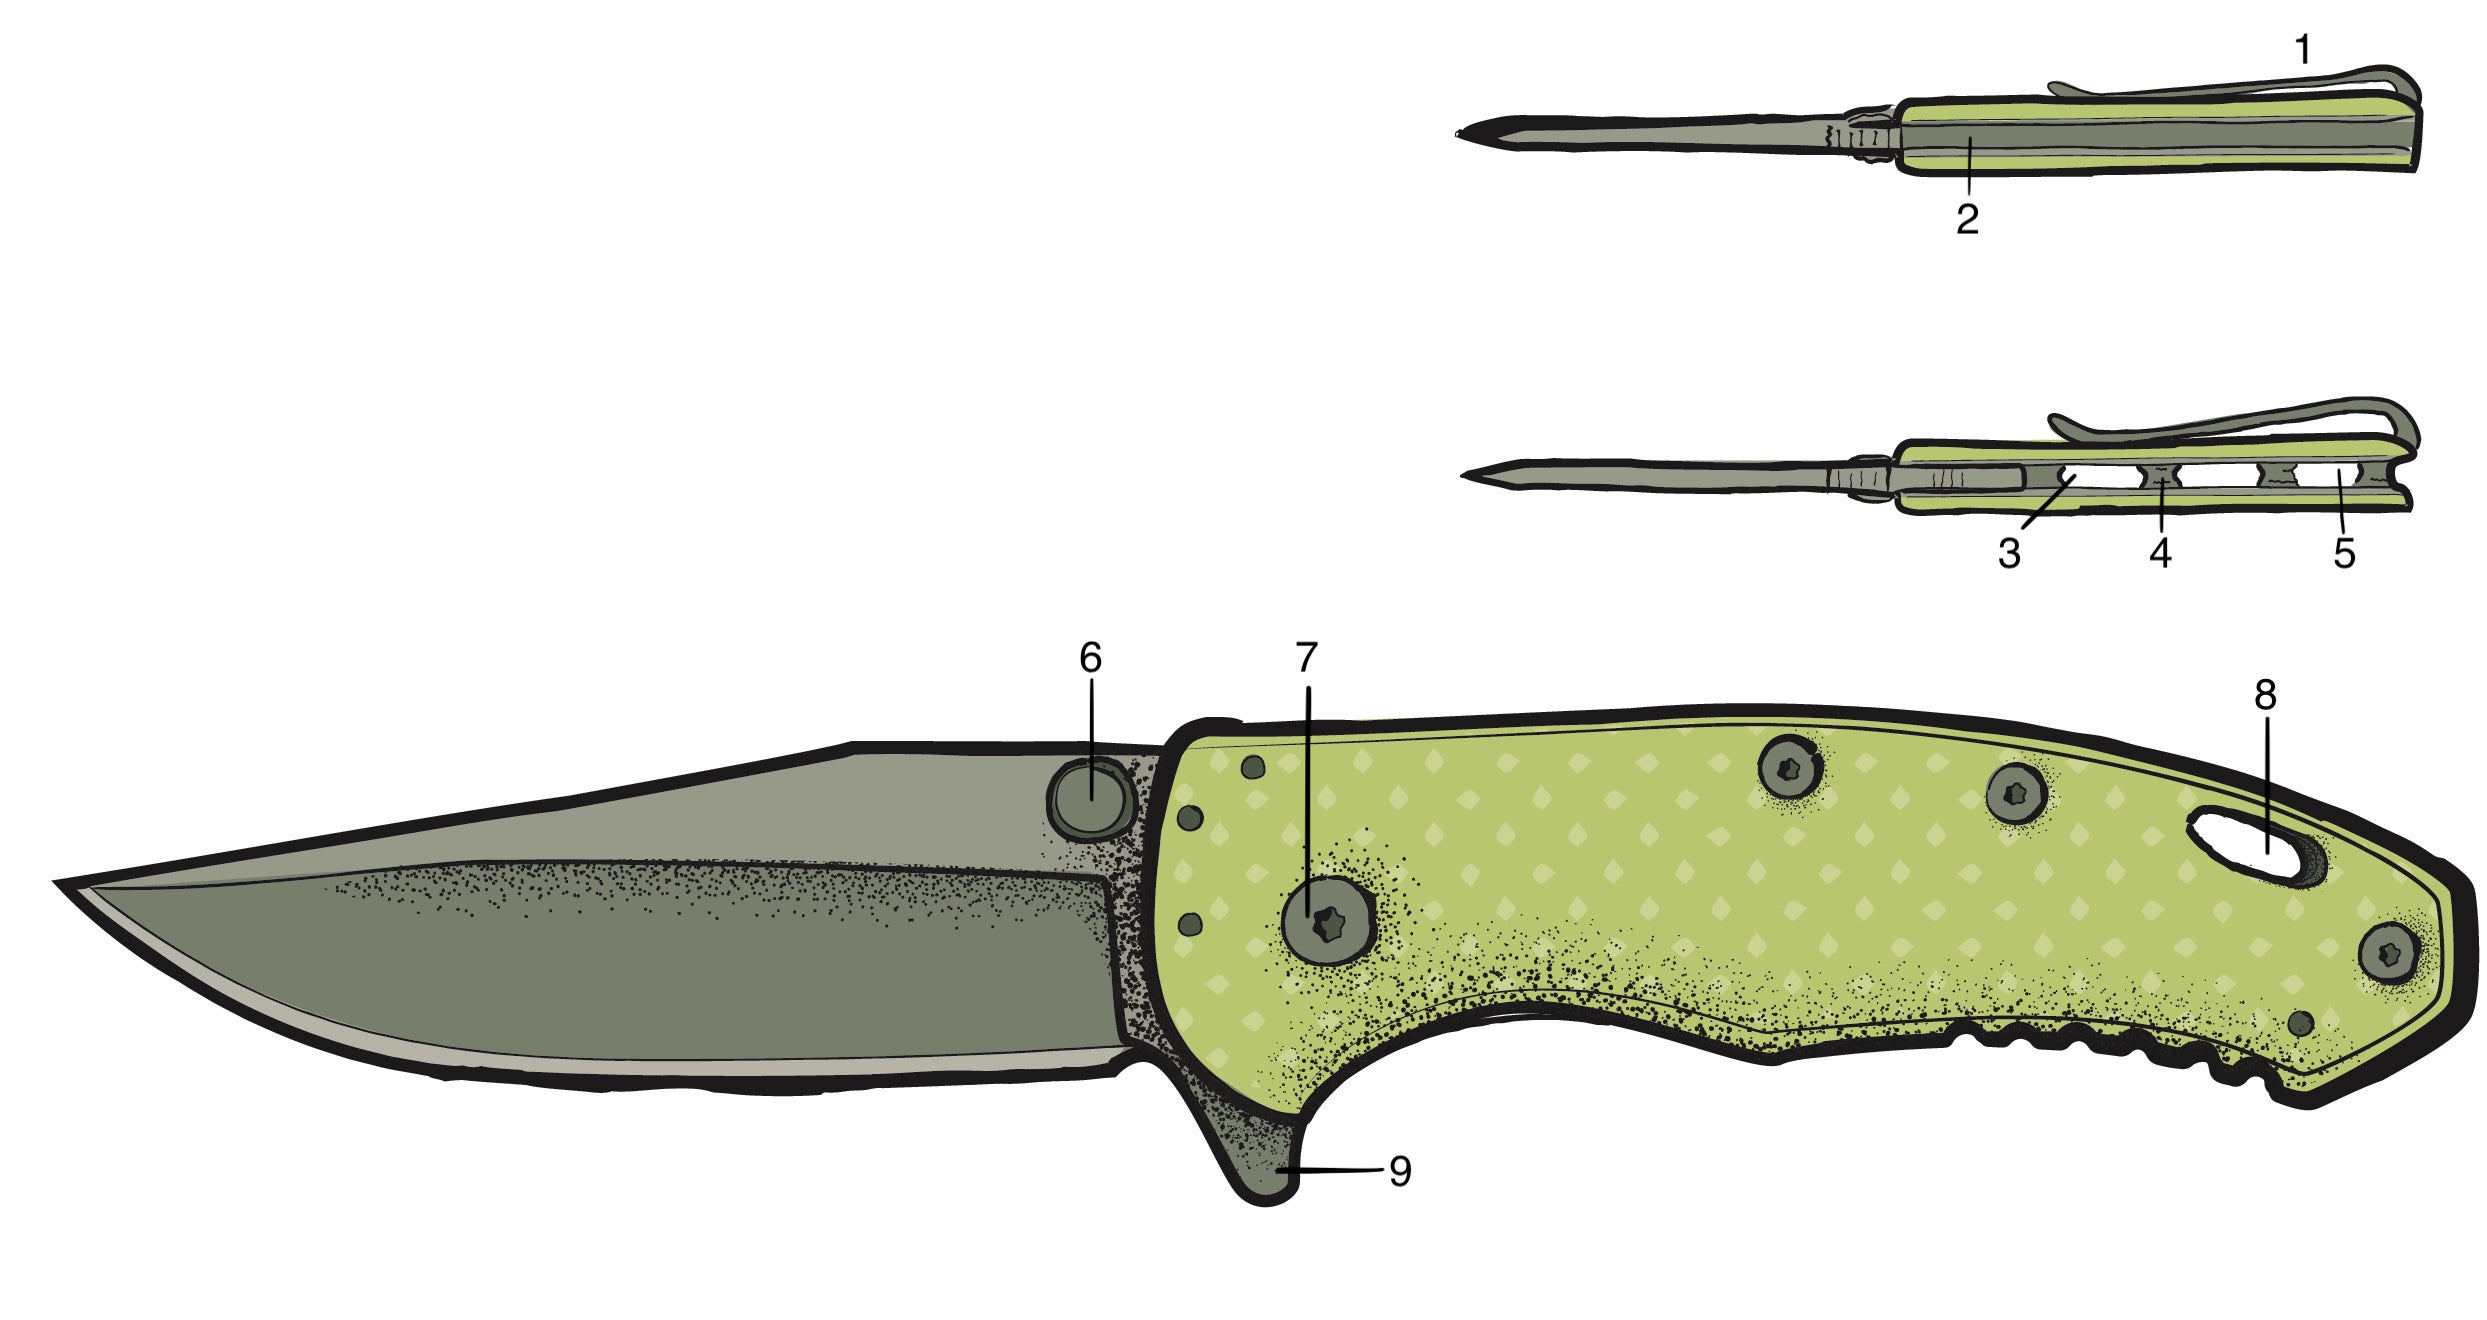 Illustration of a folding knife